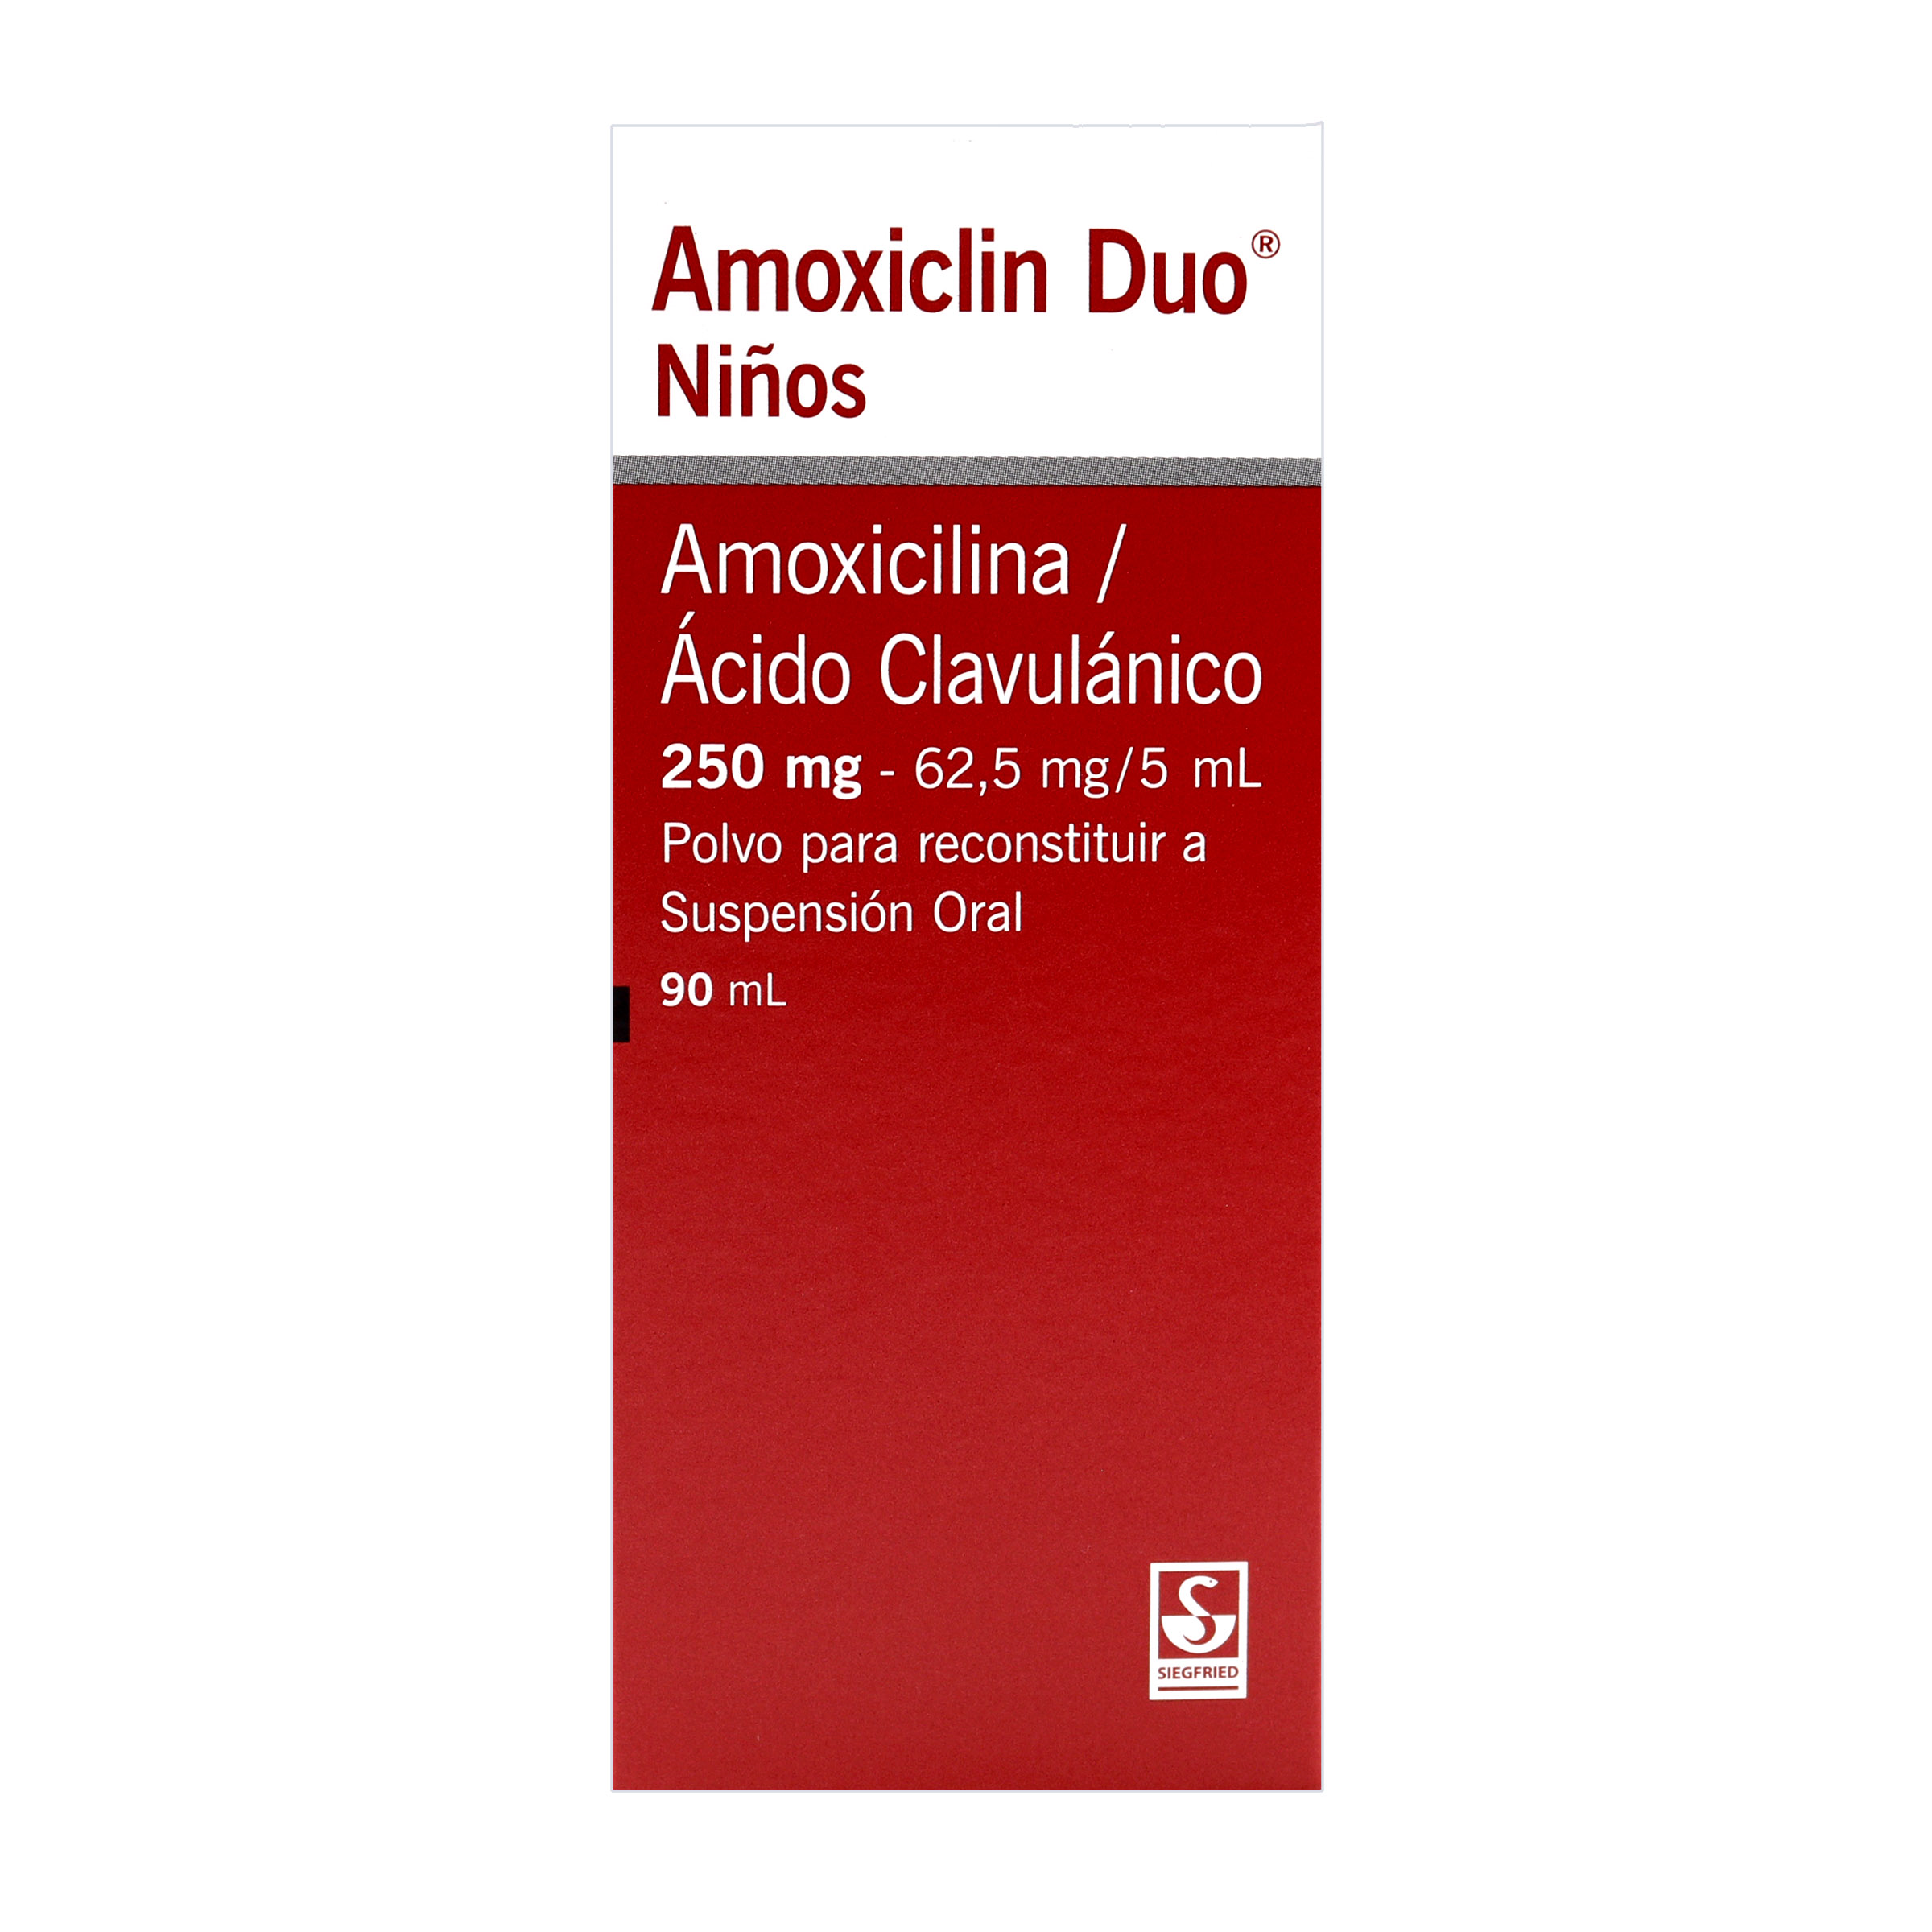 AMOXICLIN DUO NINOS POLVO 90 ML